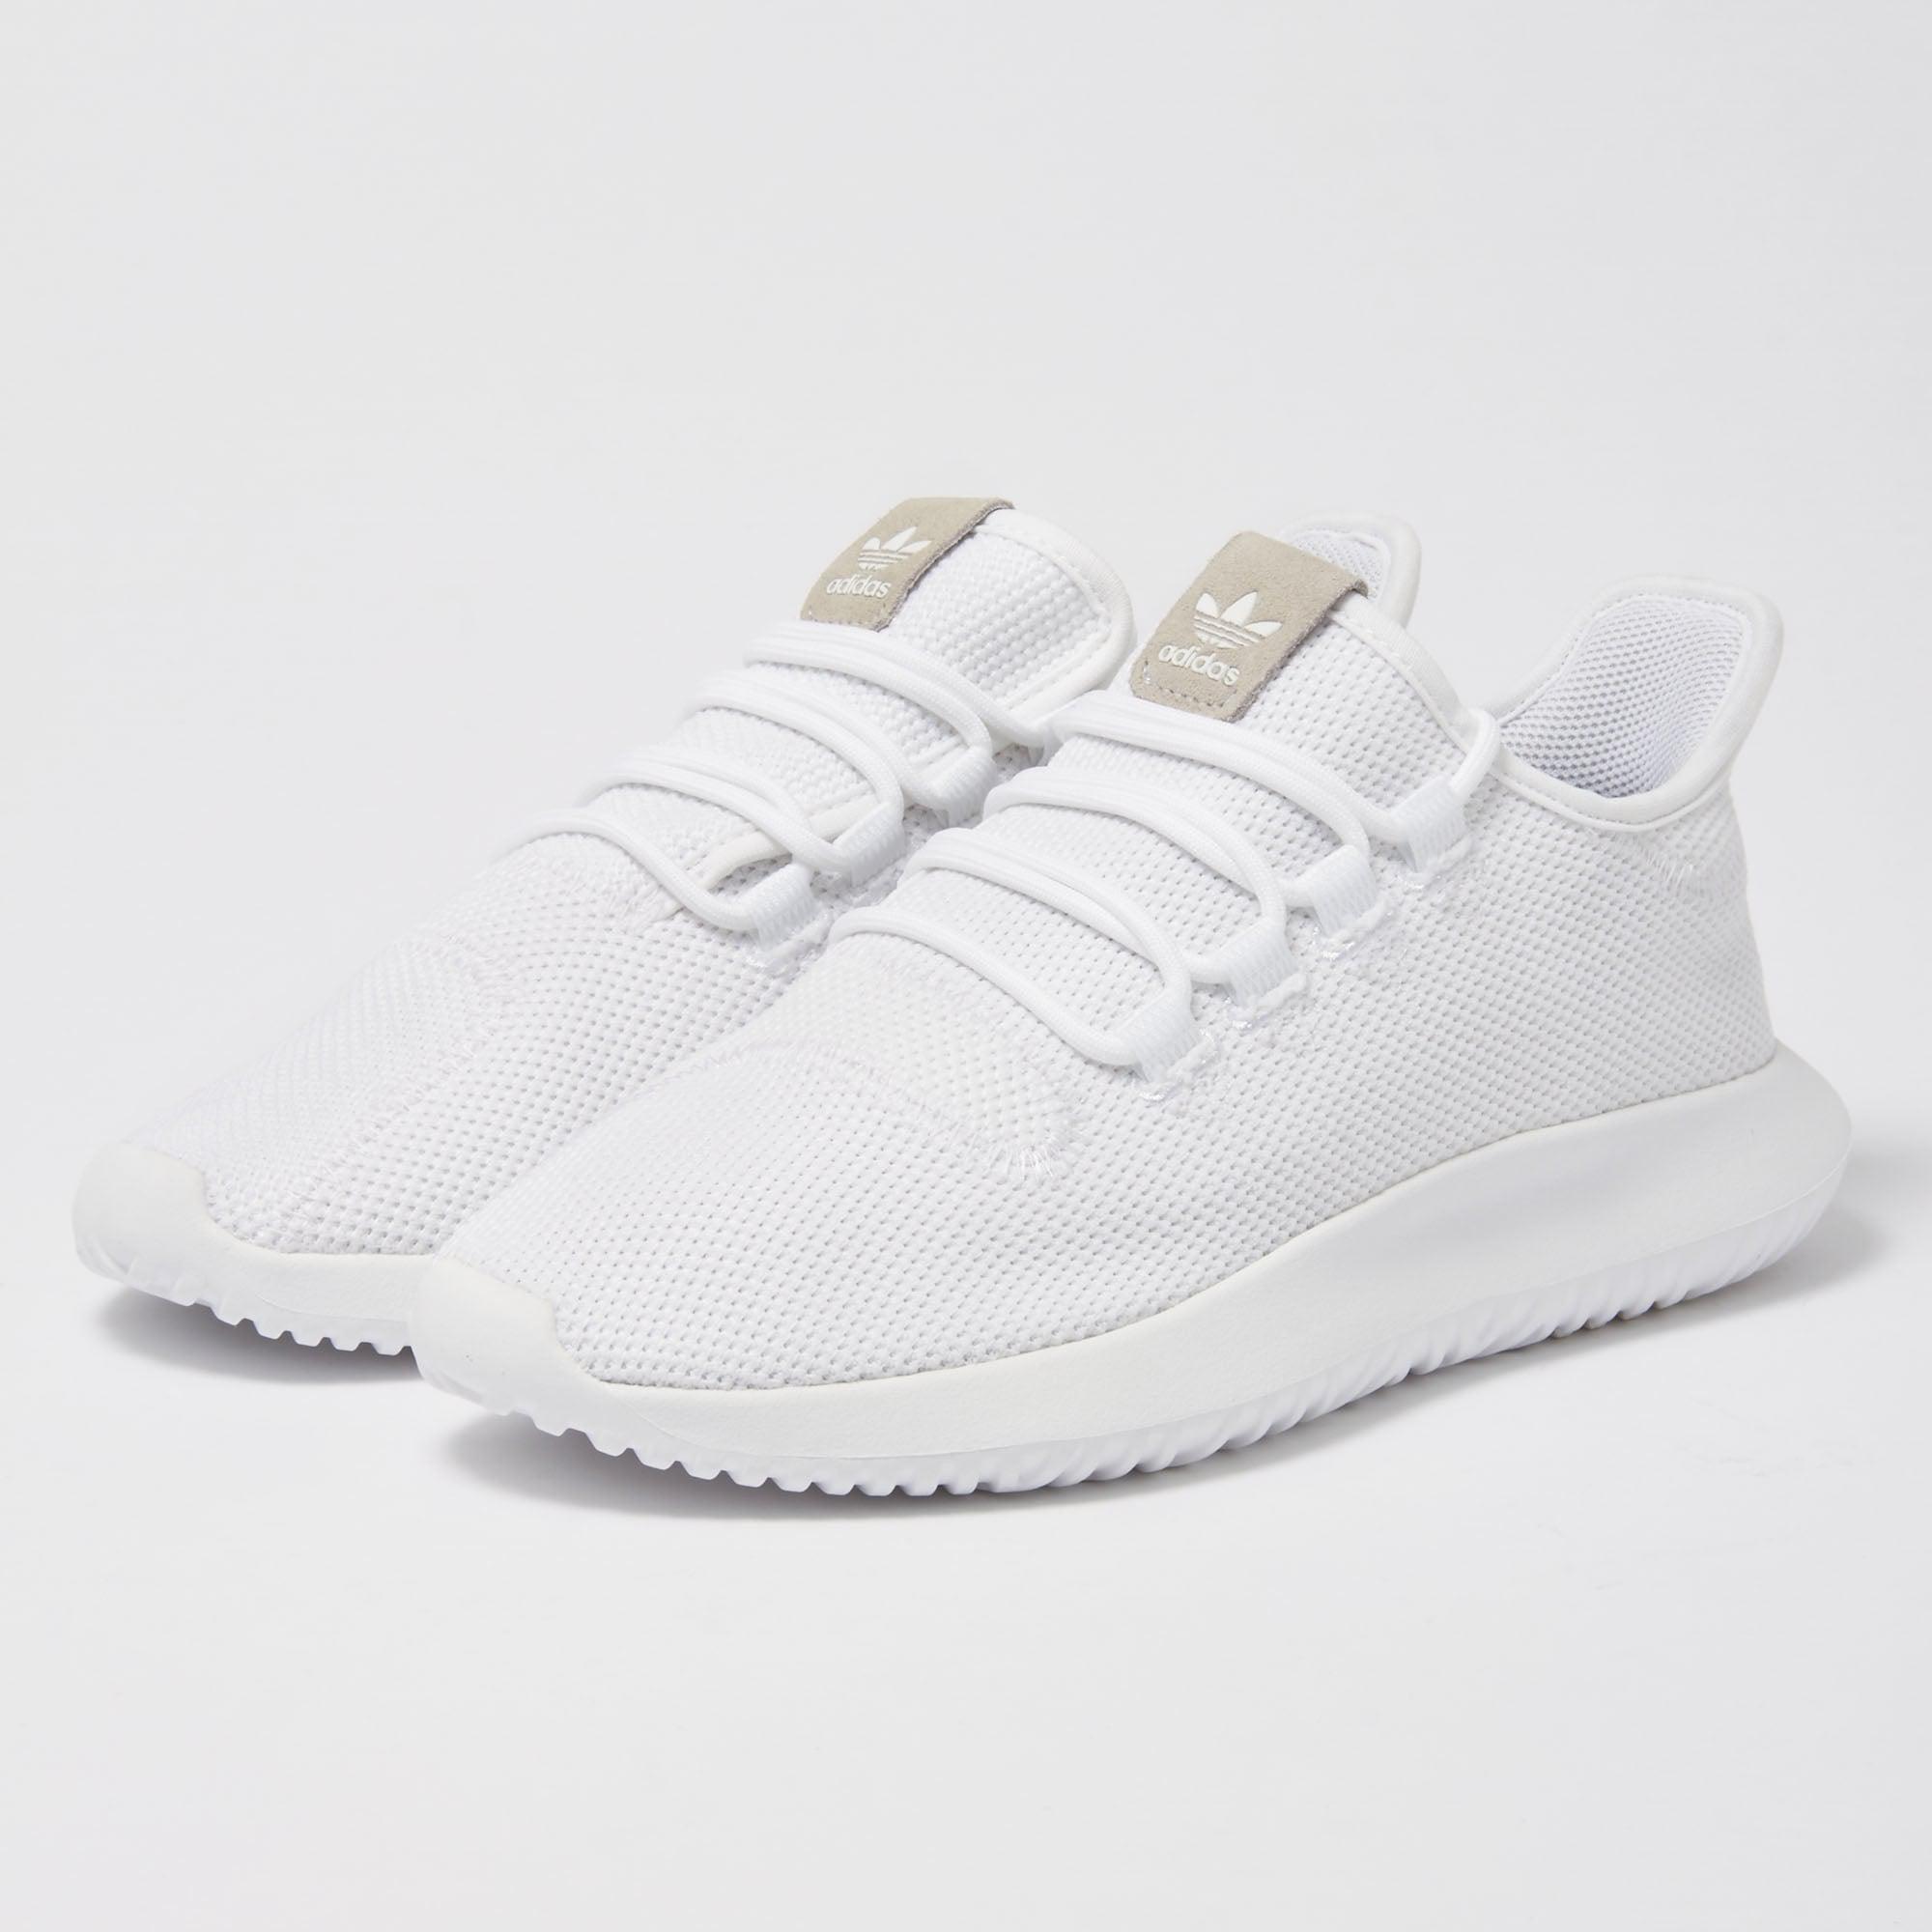 adidas tubular white shoes